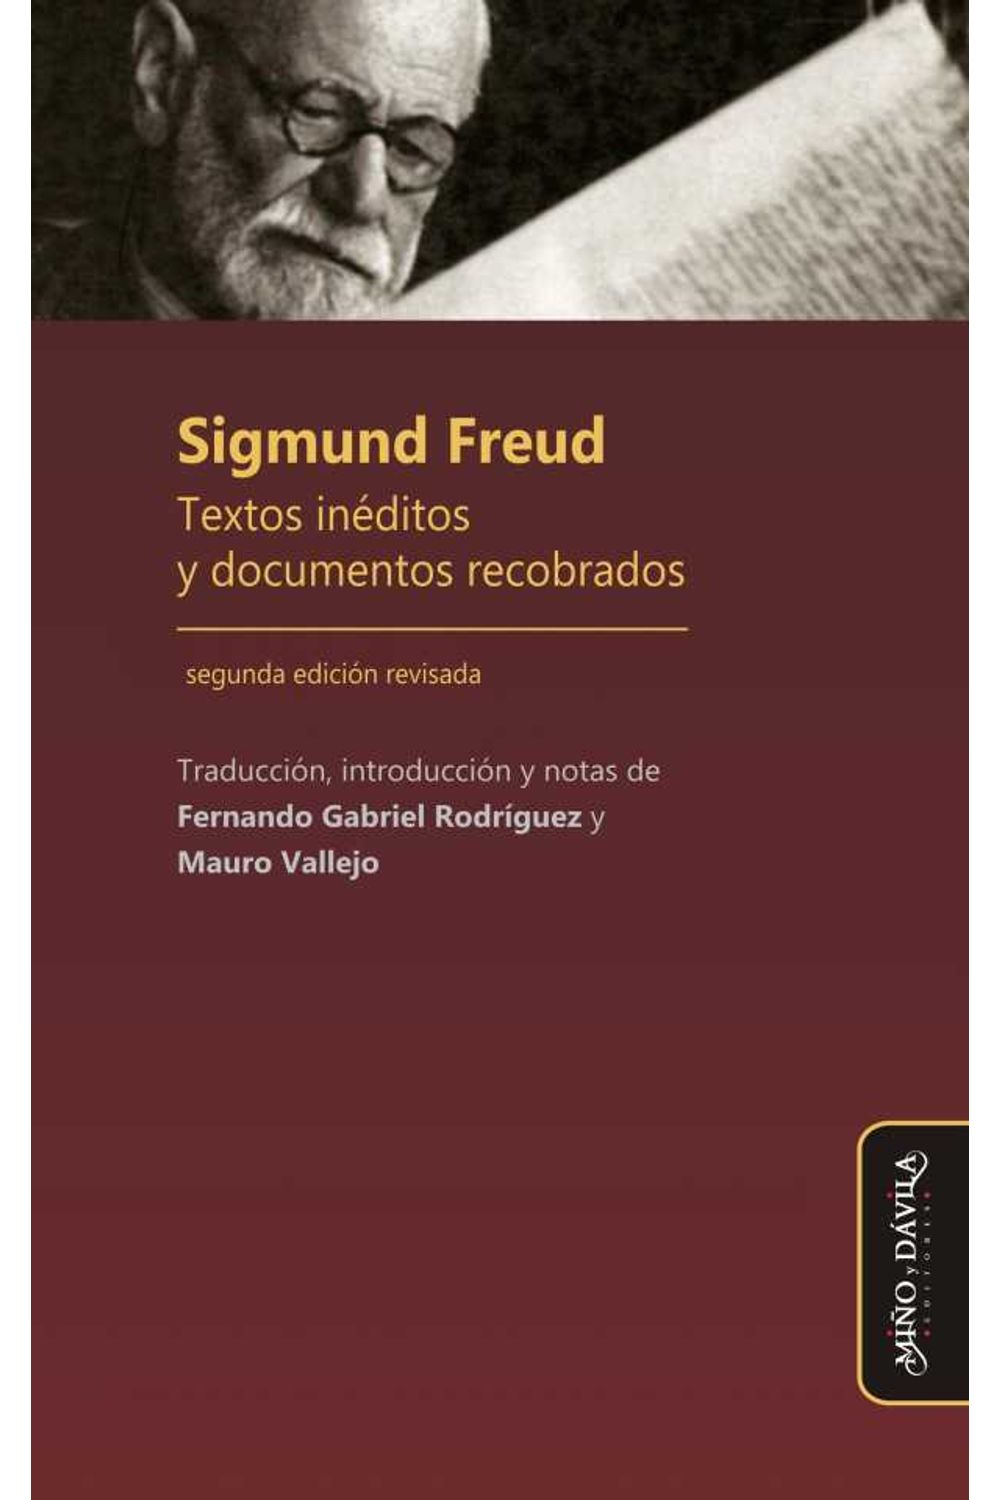 bm-sigmund-freud-textos-ineditos-y-documentos-recobrados-mino-y-davila-editores-9788417133290